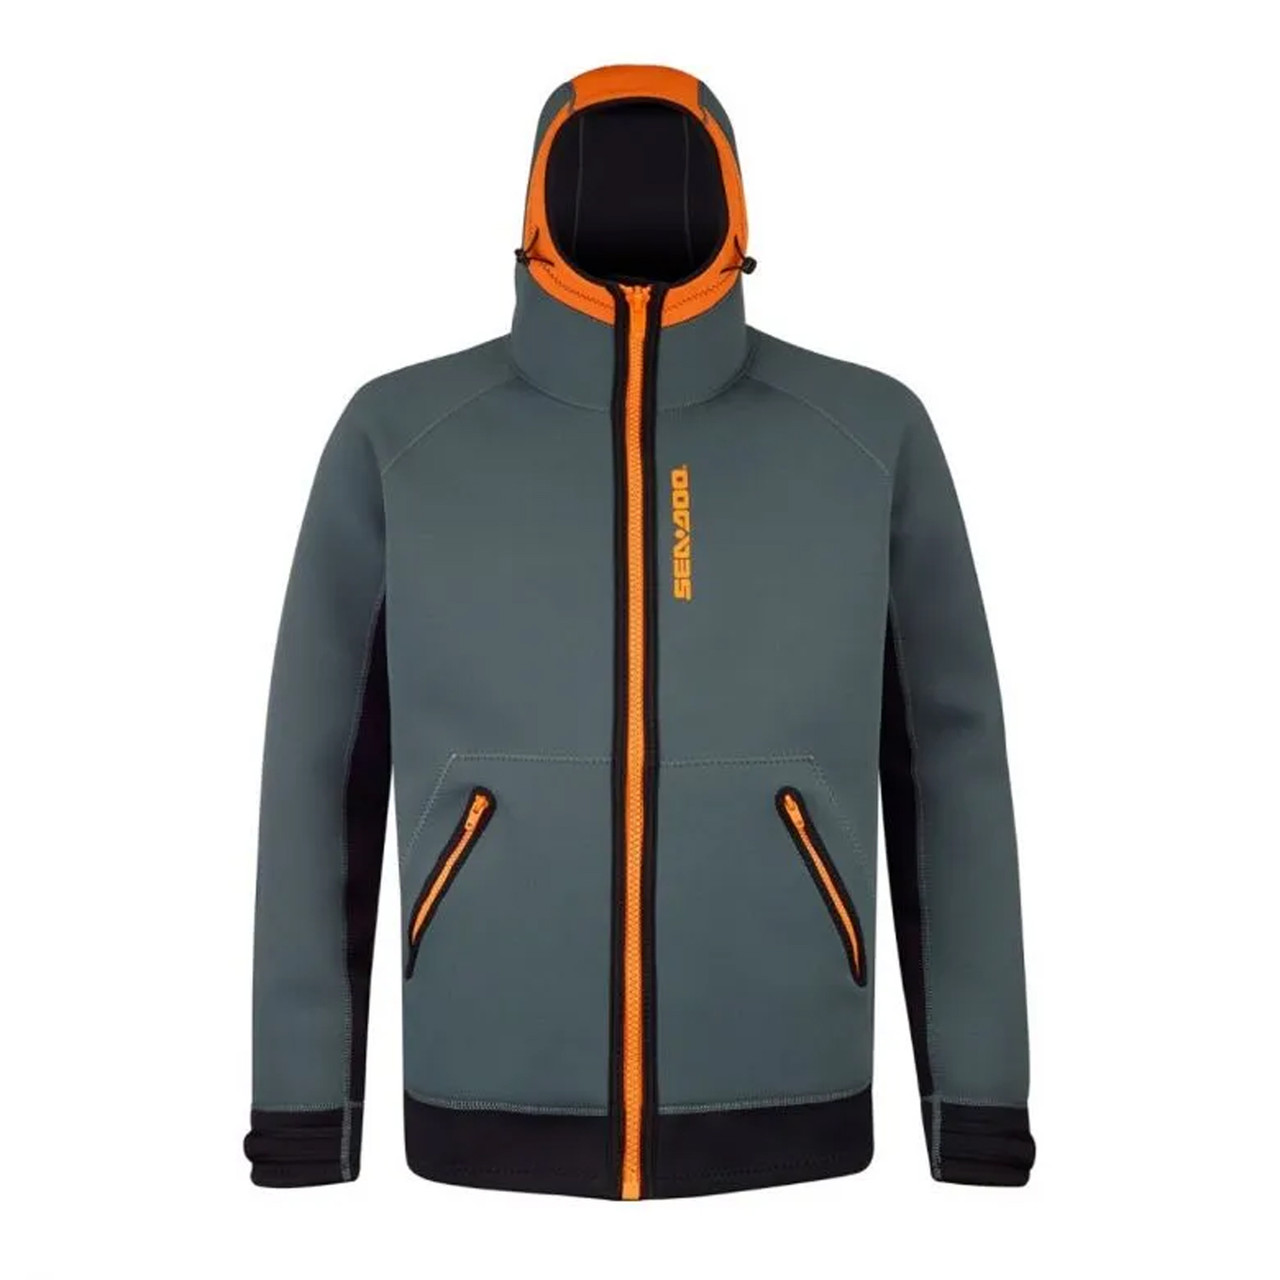 Sea-Doo New OEM, Branded Men's Orange Neoprene Nylon Riding Jacket, 2867870412